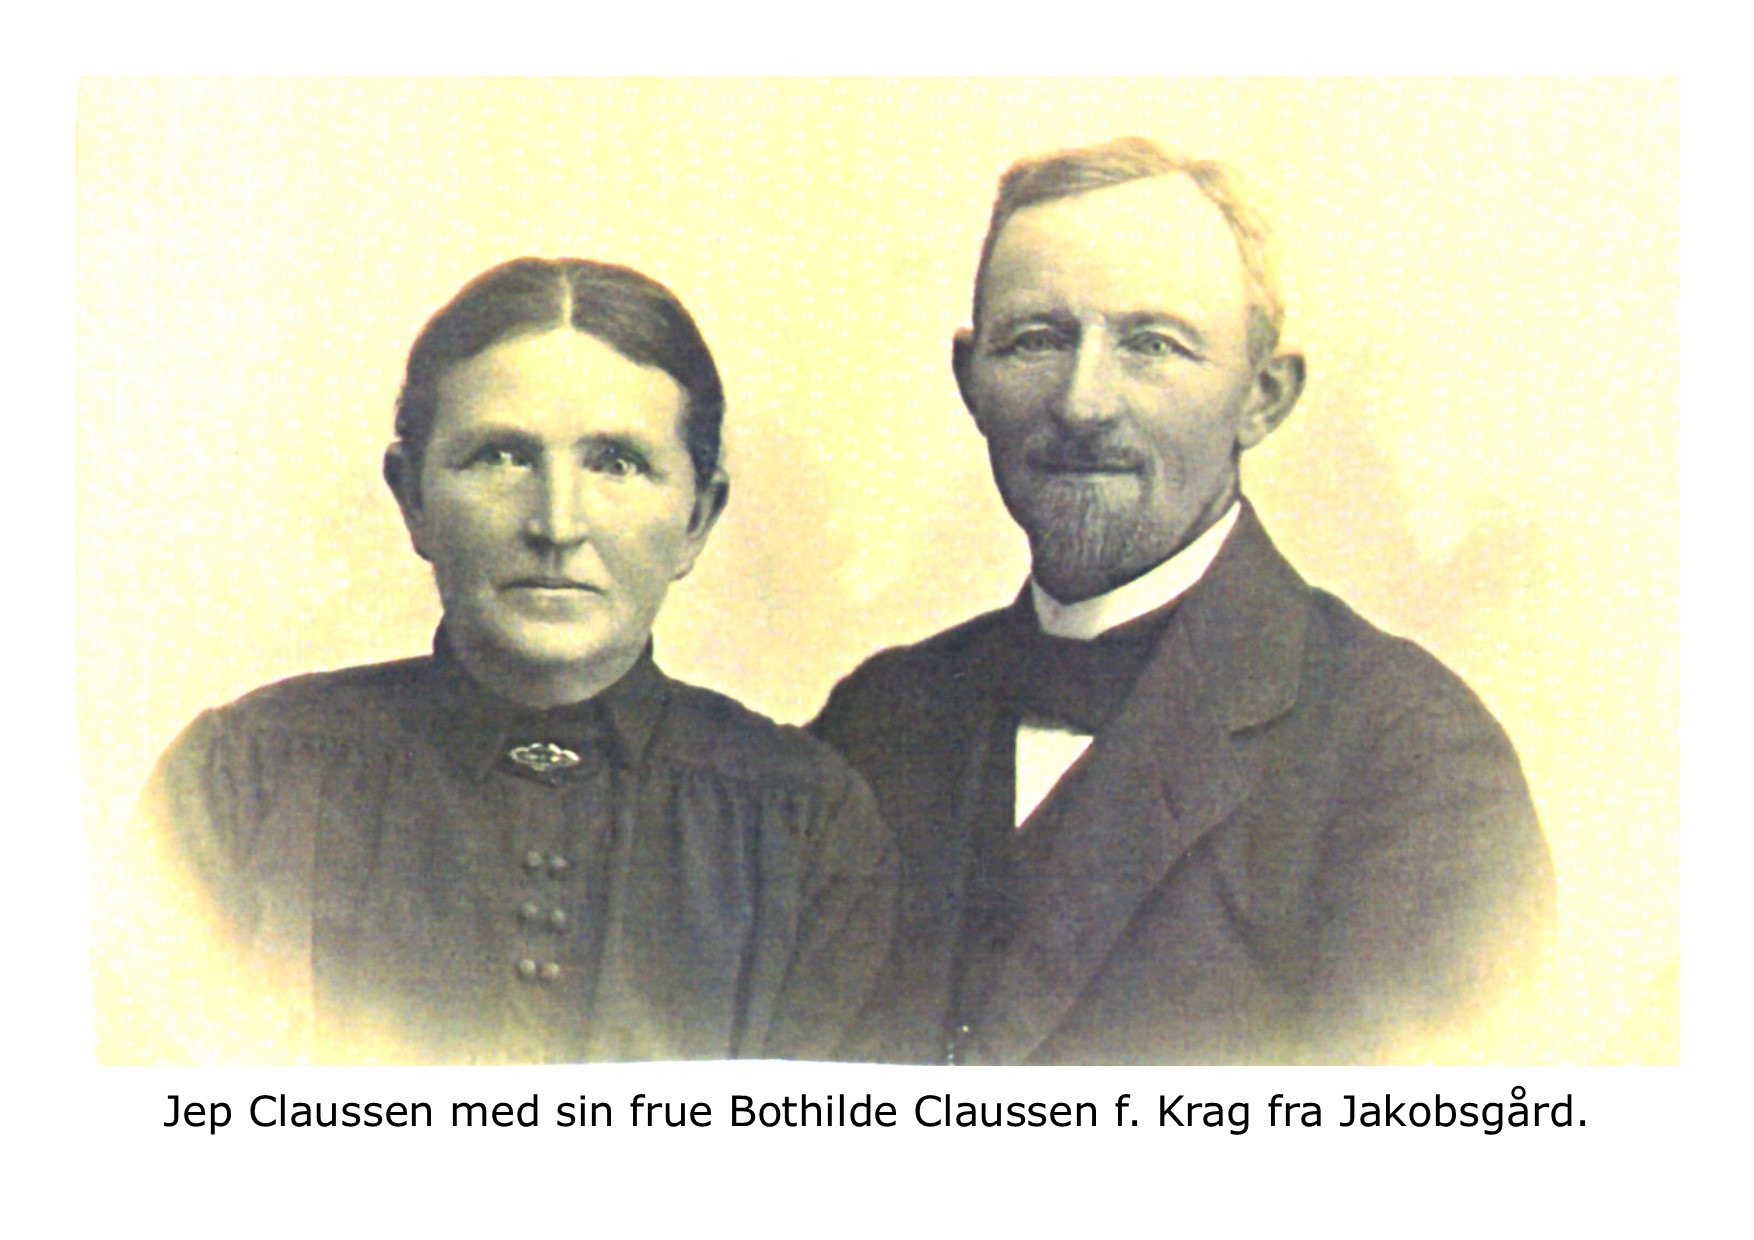 Bothilde og Jep Clausen